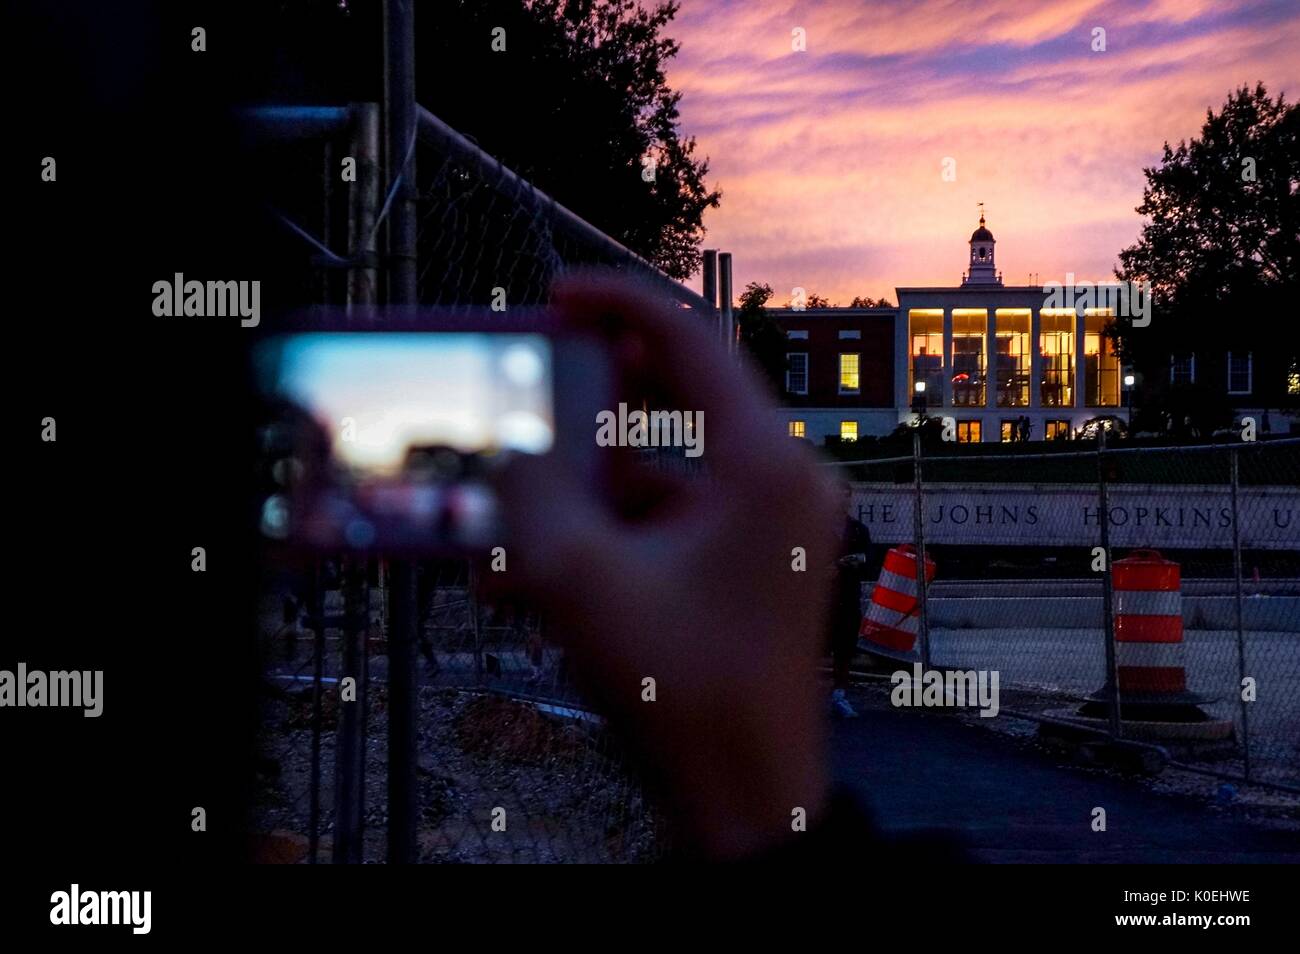 Le fond du panneau de l'Université Johns Hopkins et la bibliothèque Milton S. Eisenhower au coucher du soleil avec un ciel nuageux violet et rose, avec le premier plan d'un étudiant utilisant leur iPhone pour prendre une photo du paysage du ciel à l'Université Johns Hopkins, Baltimore, Maryland, le 7 octobre 2013. Avec la permission d'Eric Chen. Banque D'Images